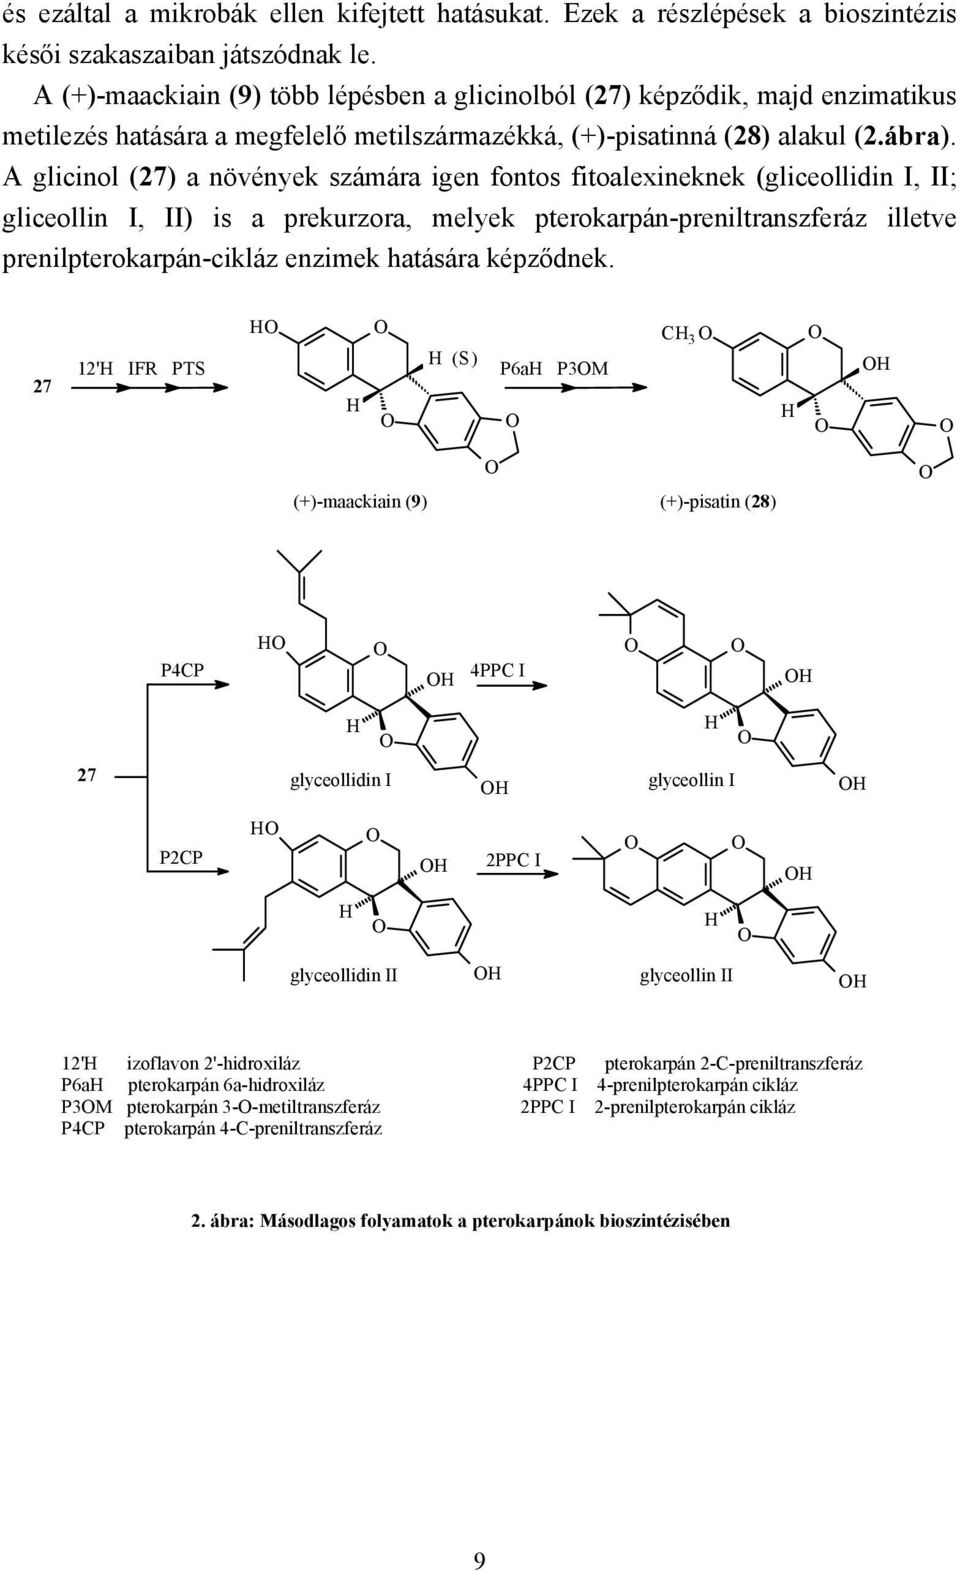 A glicinol (27) a növények számára igen fontos fitoalexineknek (gliceollidin I, II; gliceollin I, II) is a prekurzora, melyek pterokarpán-preniltranszferáz illetve prenilpterokarpán-cikláz enzimek